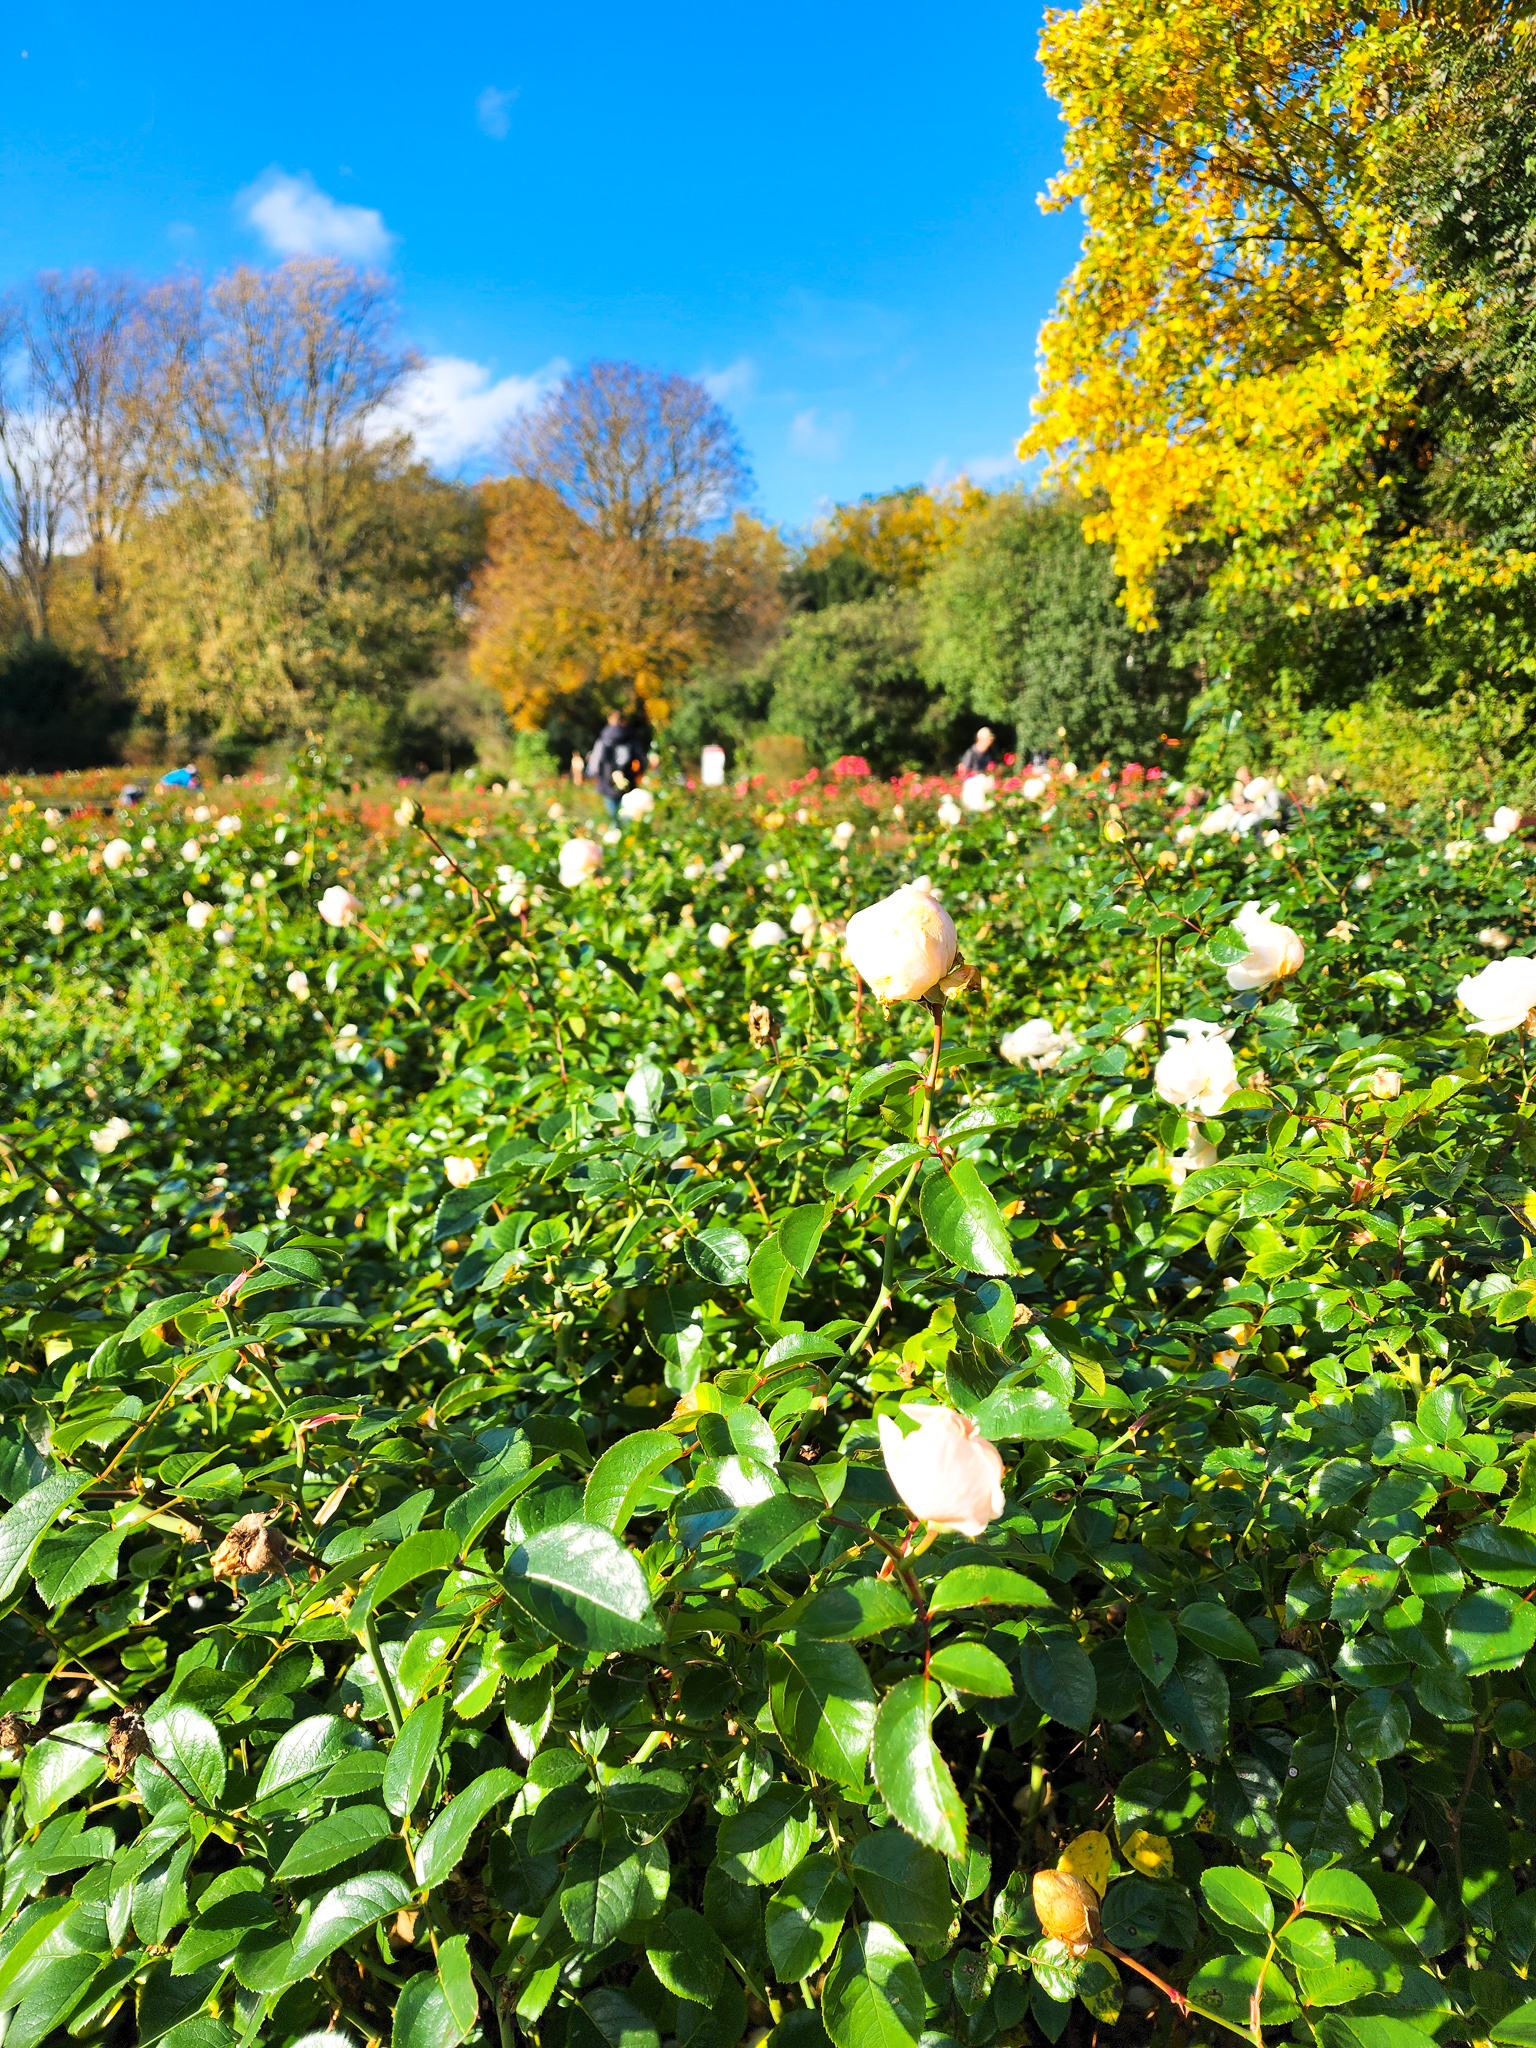 Vondelpark amsterdam rose garden